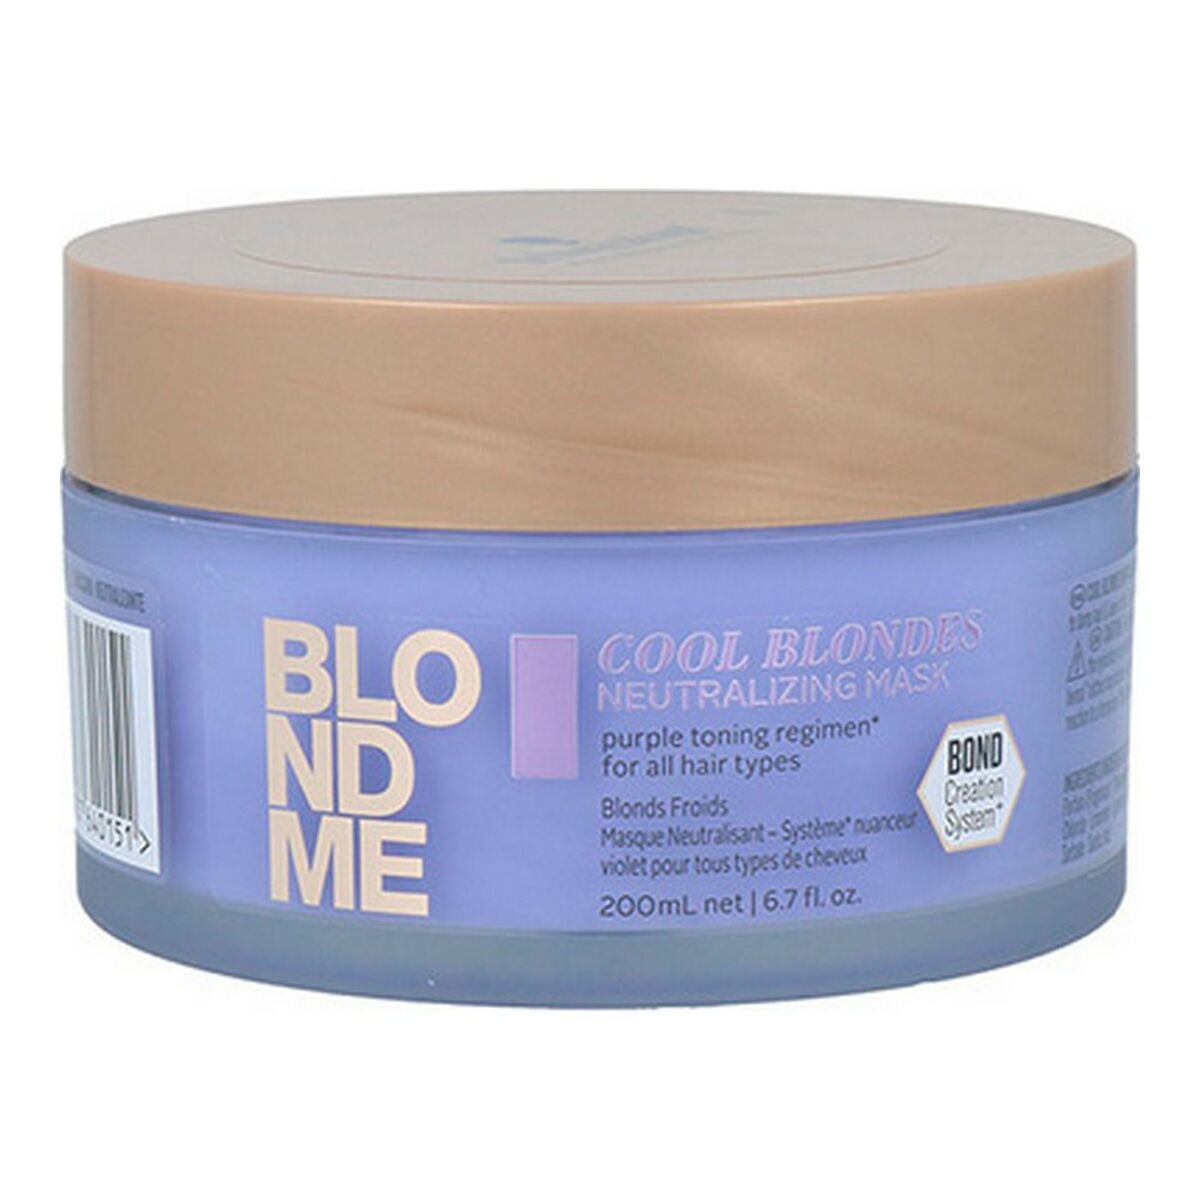 Osta tuote Hiusnaamio Blondme Cool Blondes Schwarzkopf (200 ml) verkkokaupastamme Korhone: Terveys & Kauneus 20% alennuksella koodilla KORHONE